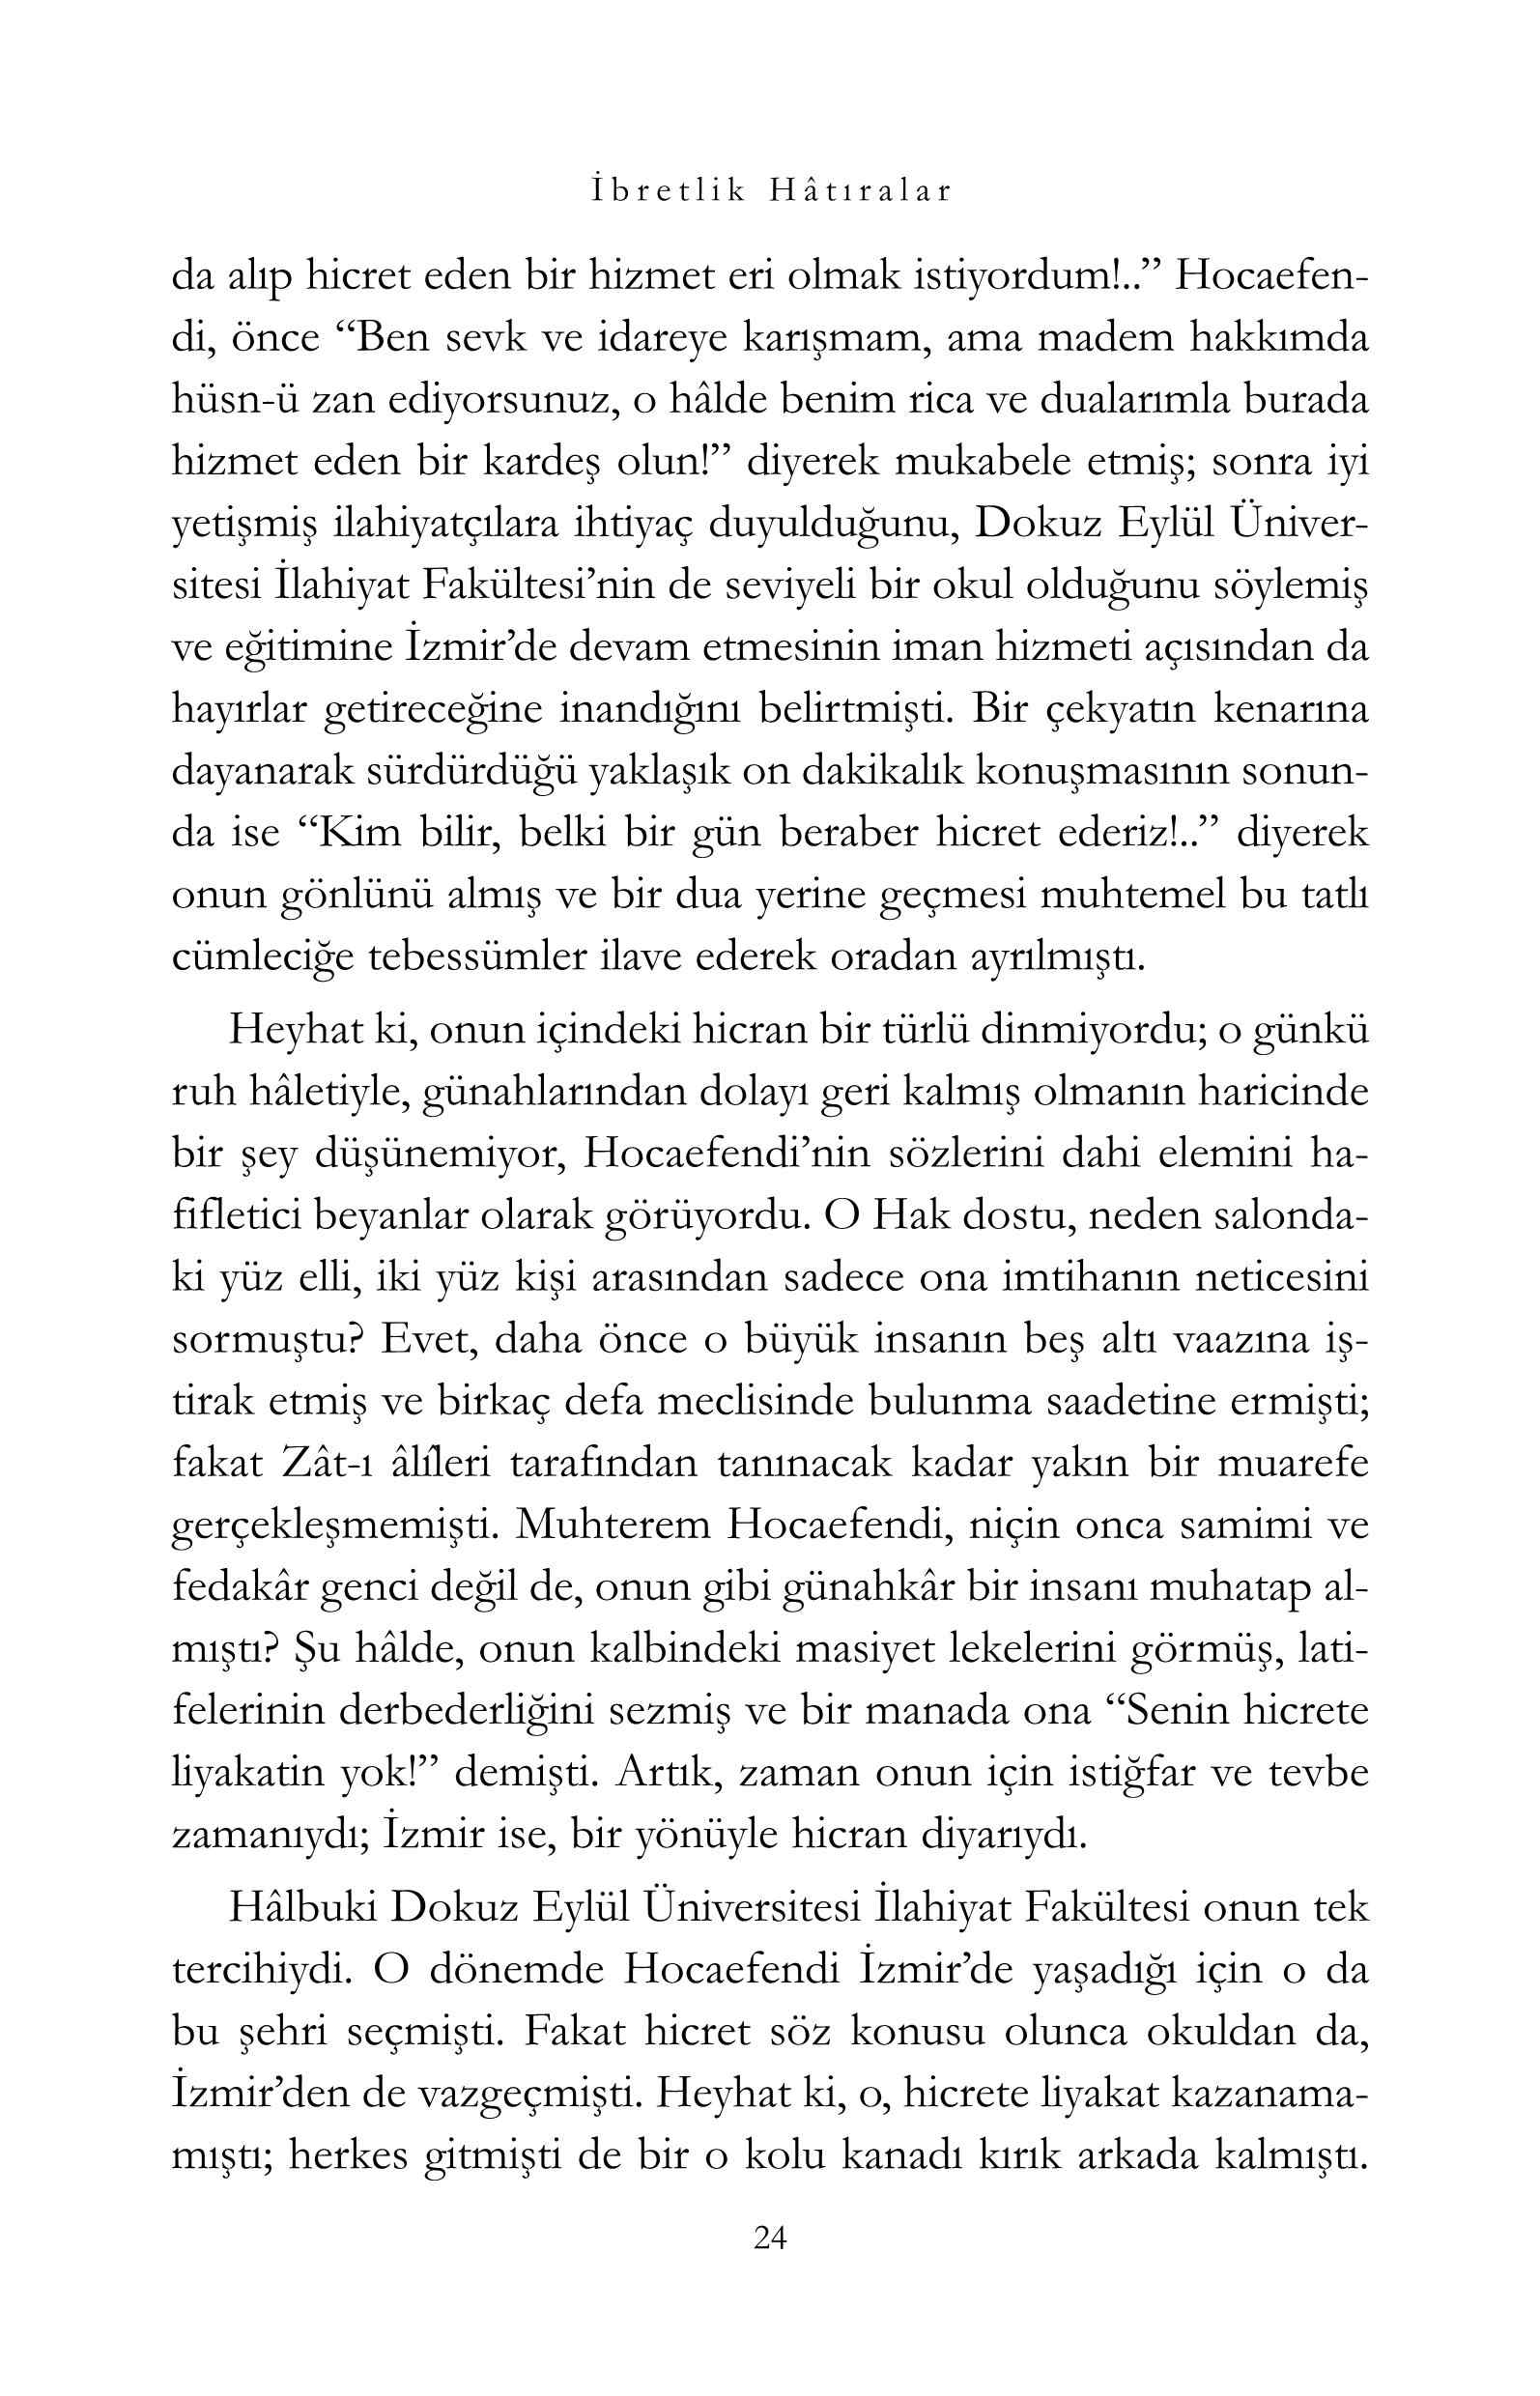 Osman Simsek - Ibretlik Hatiralar - M Fethullah Gulenin Ruh Dunyasina Ayna - IsikYayinlari.pdf, 310-Sayfa 